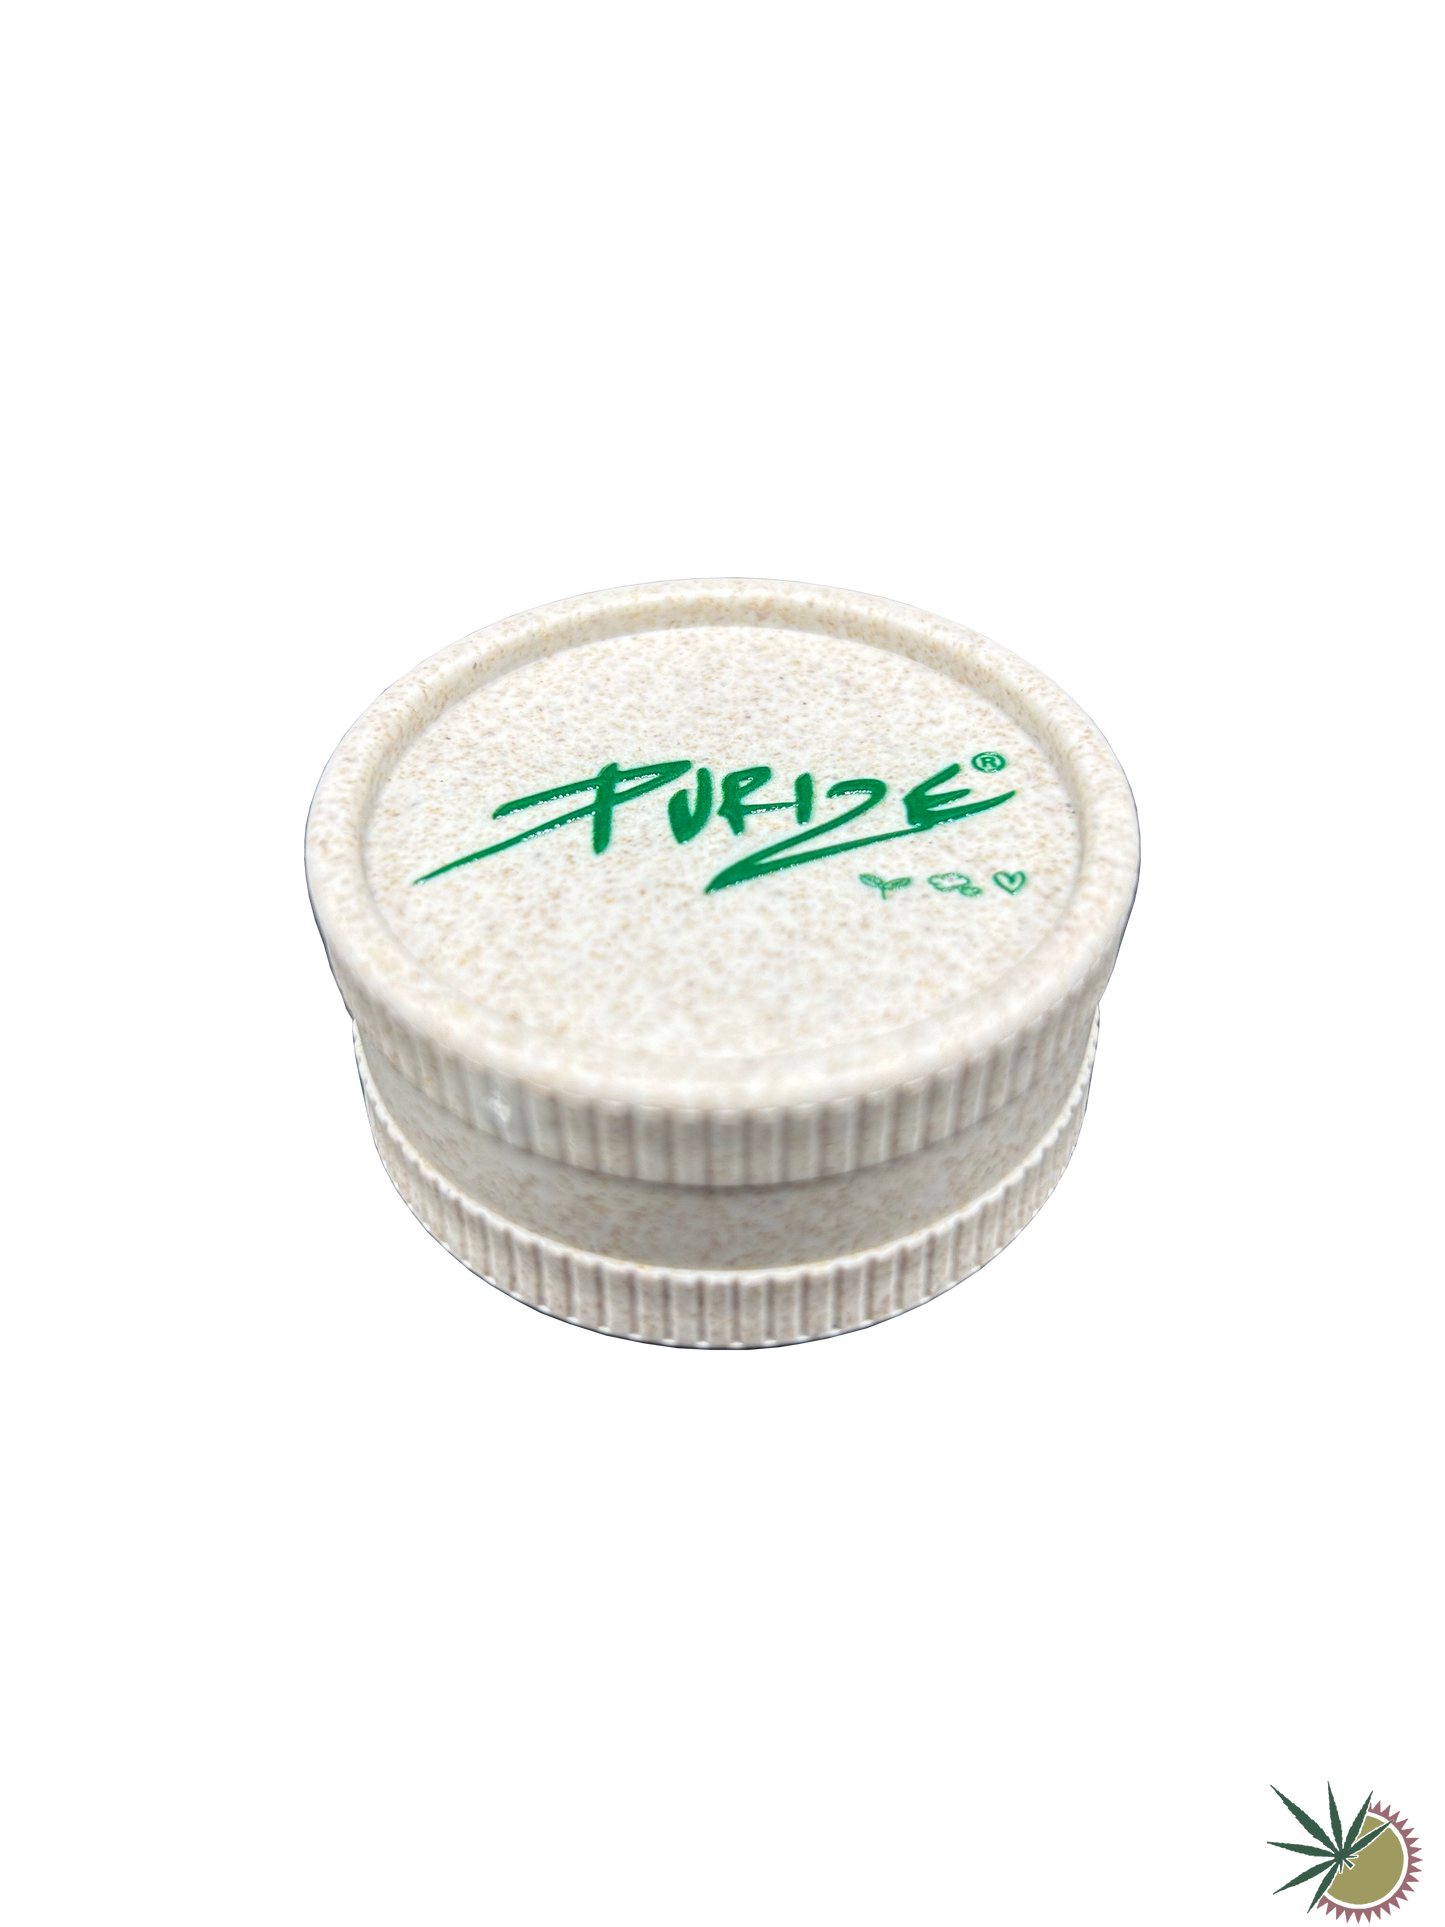 Grinder 2-teilig "Purize" Ø55mm aus Kunststoff mit organischem Anteil